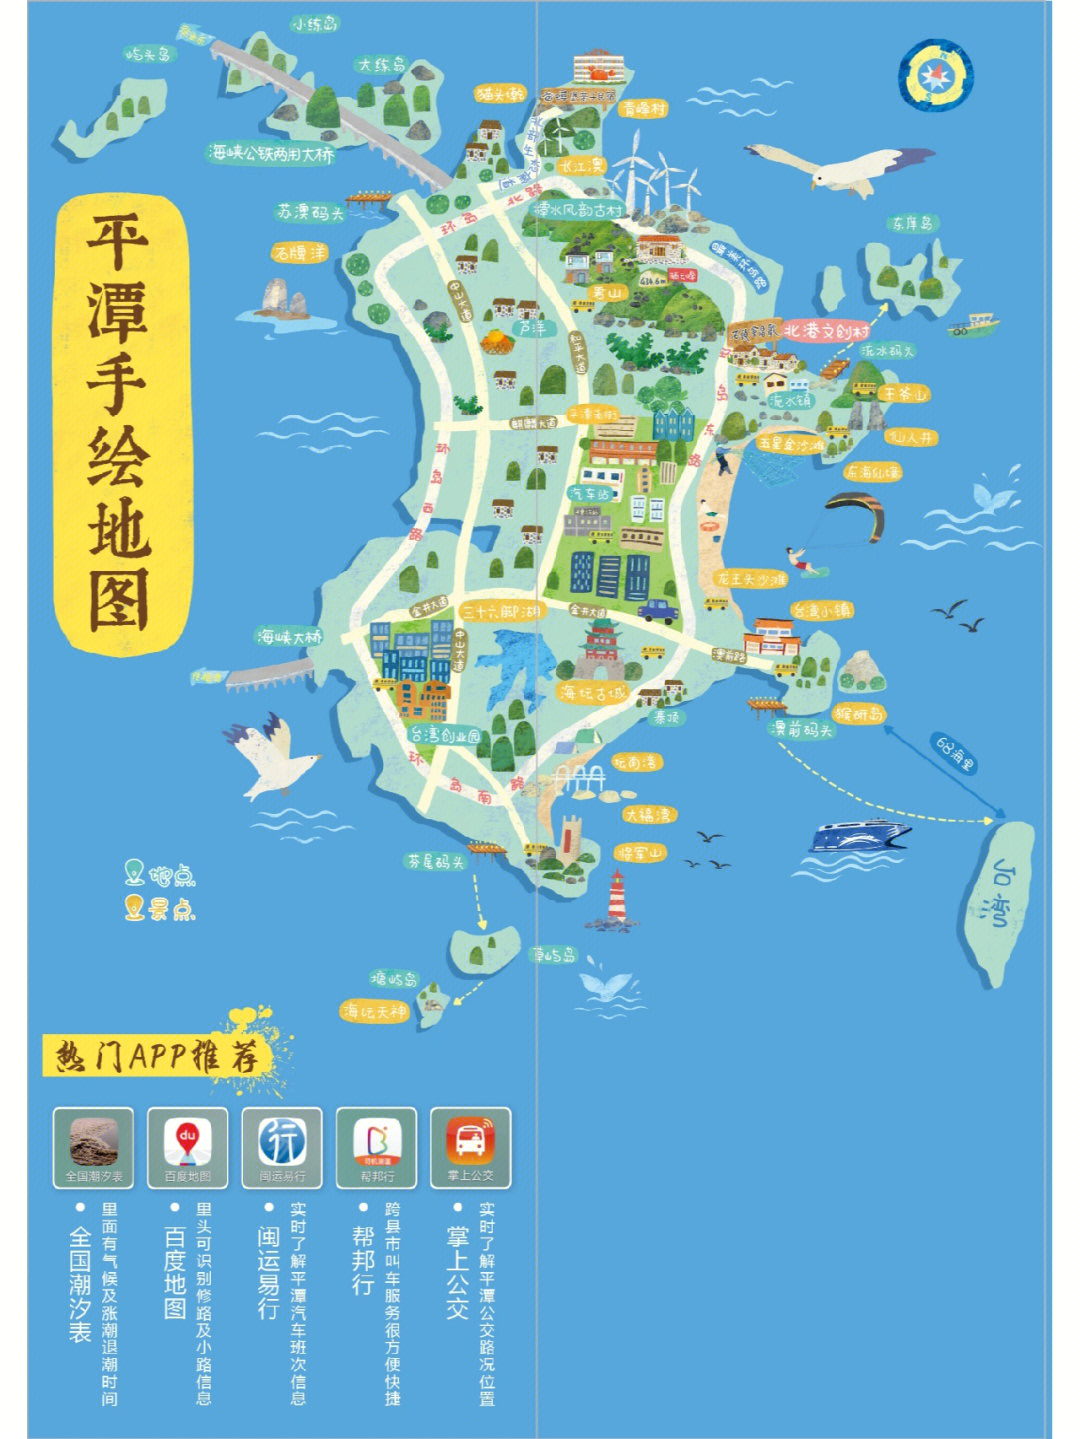 平潭台湾小镇旅游攻略图片